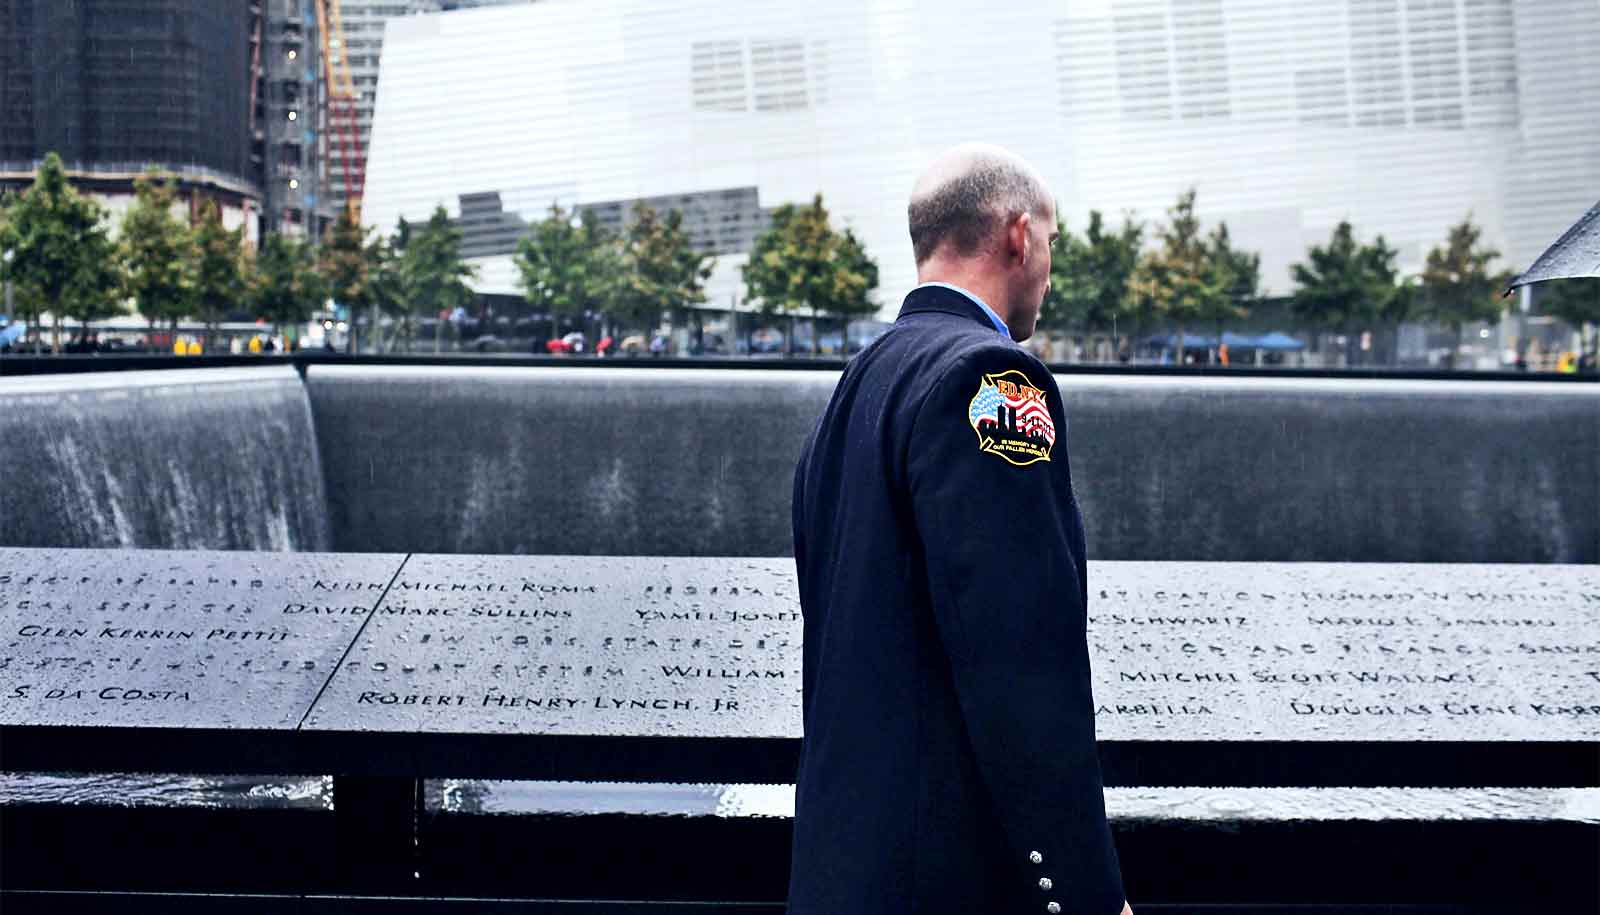 22.11 9. Мемориал пожарным 11 сентября в США. Мемориал 11 сентября новый. Мемориал 11 сентября новый каска. Мемориал в Италии 11 сентября.